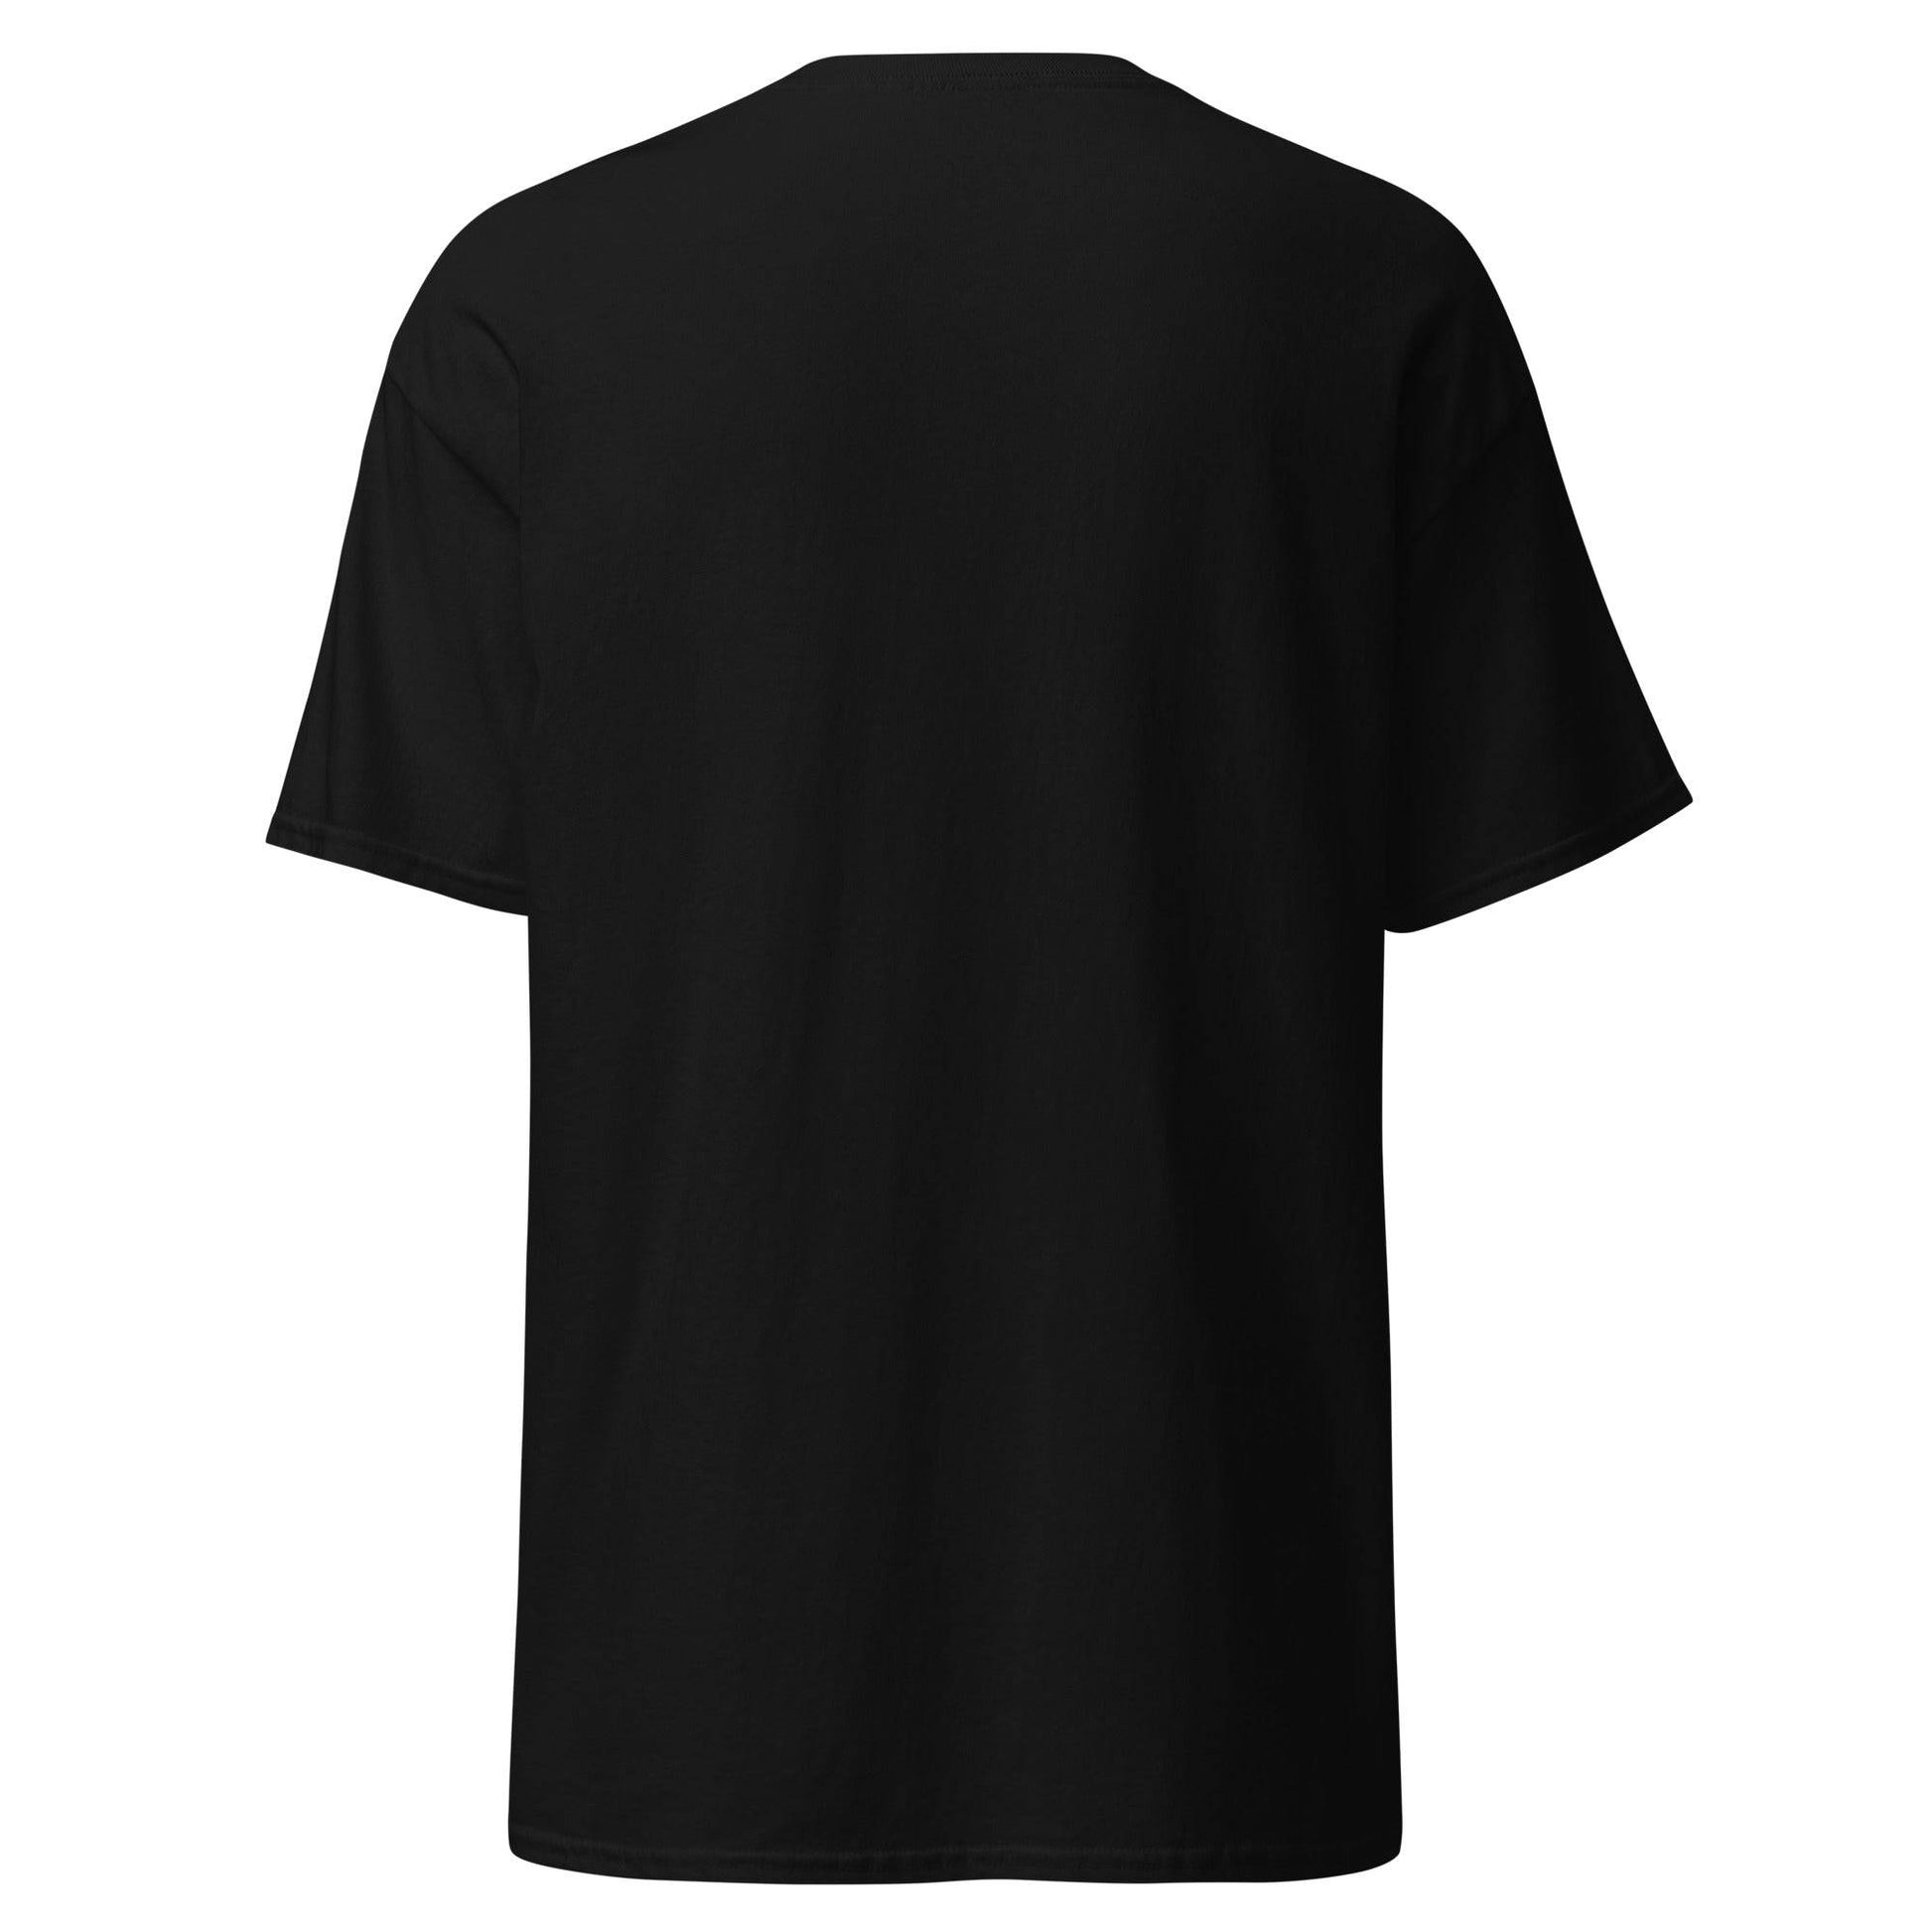 Camiseta negra Celta equipo fútbol Un escudo no meu peito back